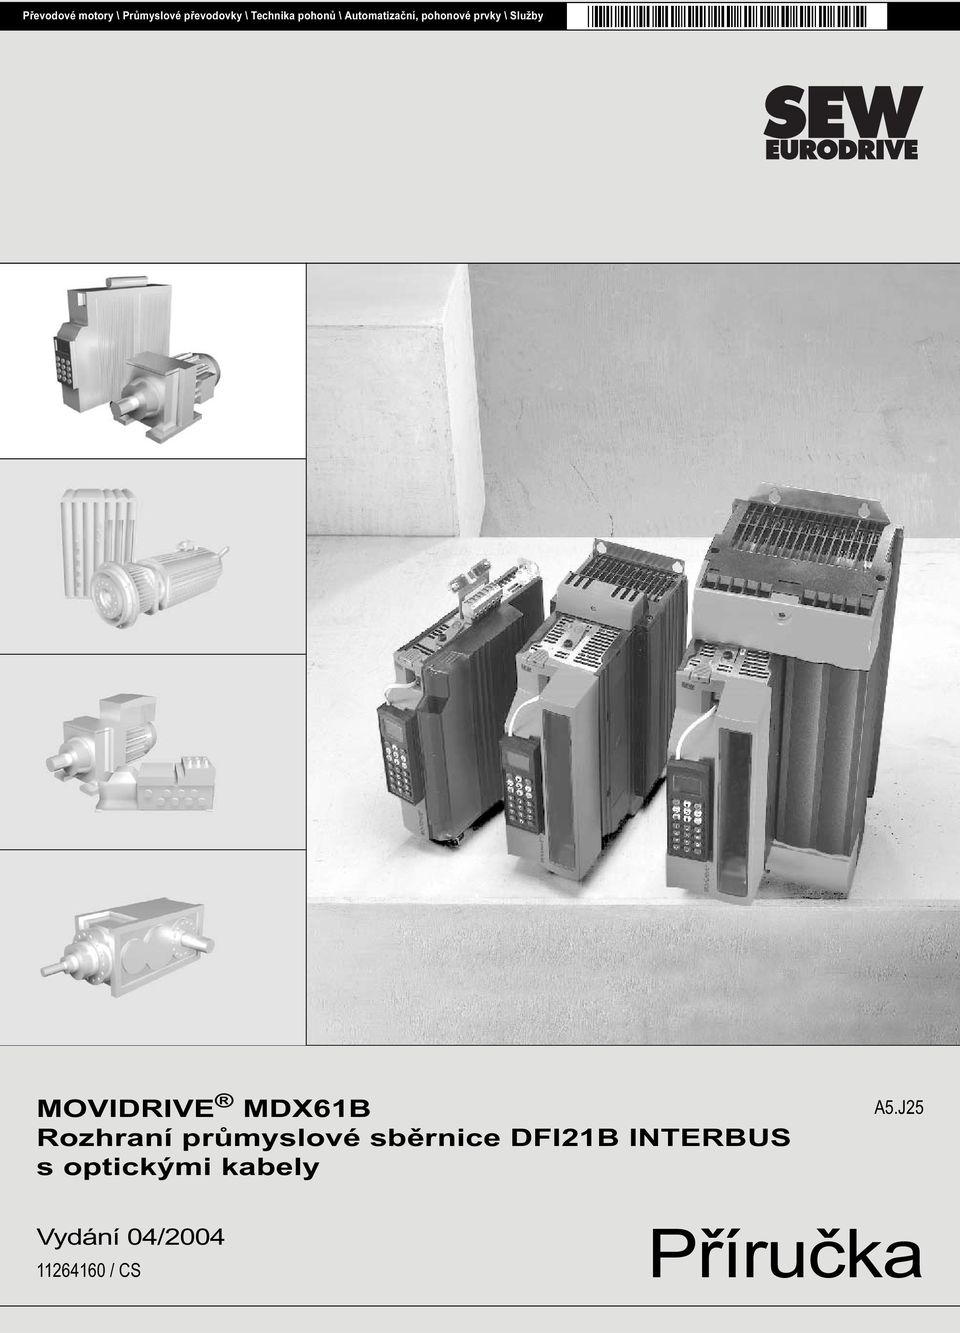 MOVIDRIVE MDX61B Rozhraní průmyslové sběrnice DFI21B